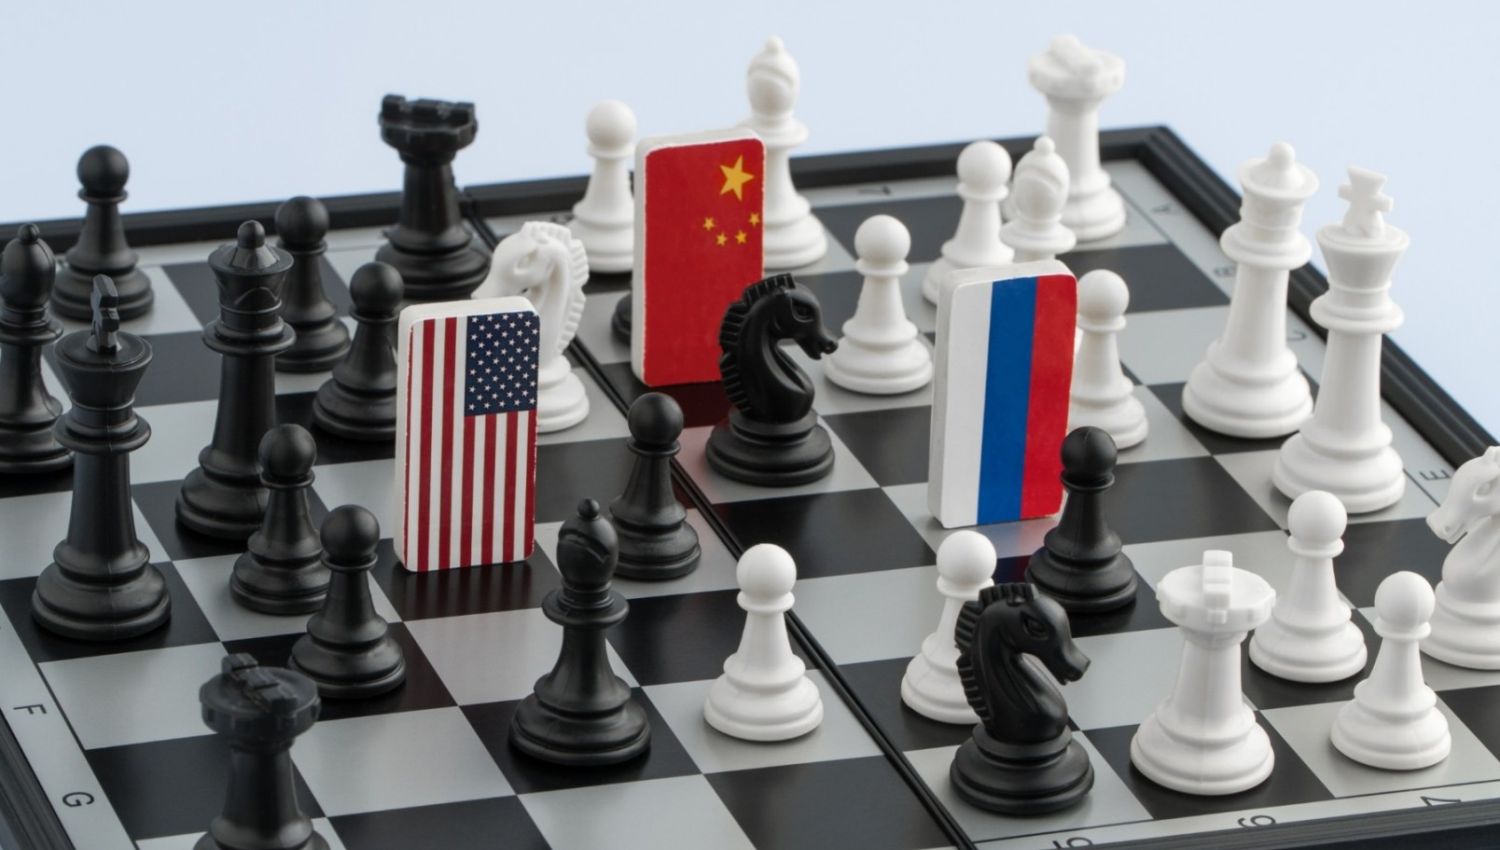 بوليتيكو: اللعبة الرقمية الكبرى بدأت بين الغرب والصين وروسيا